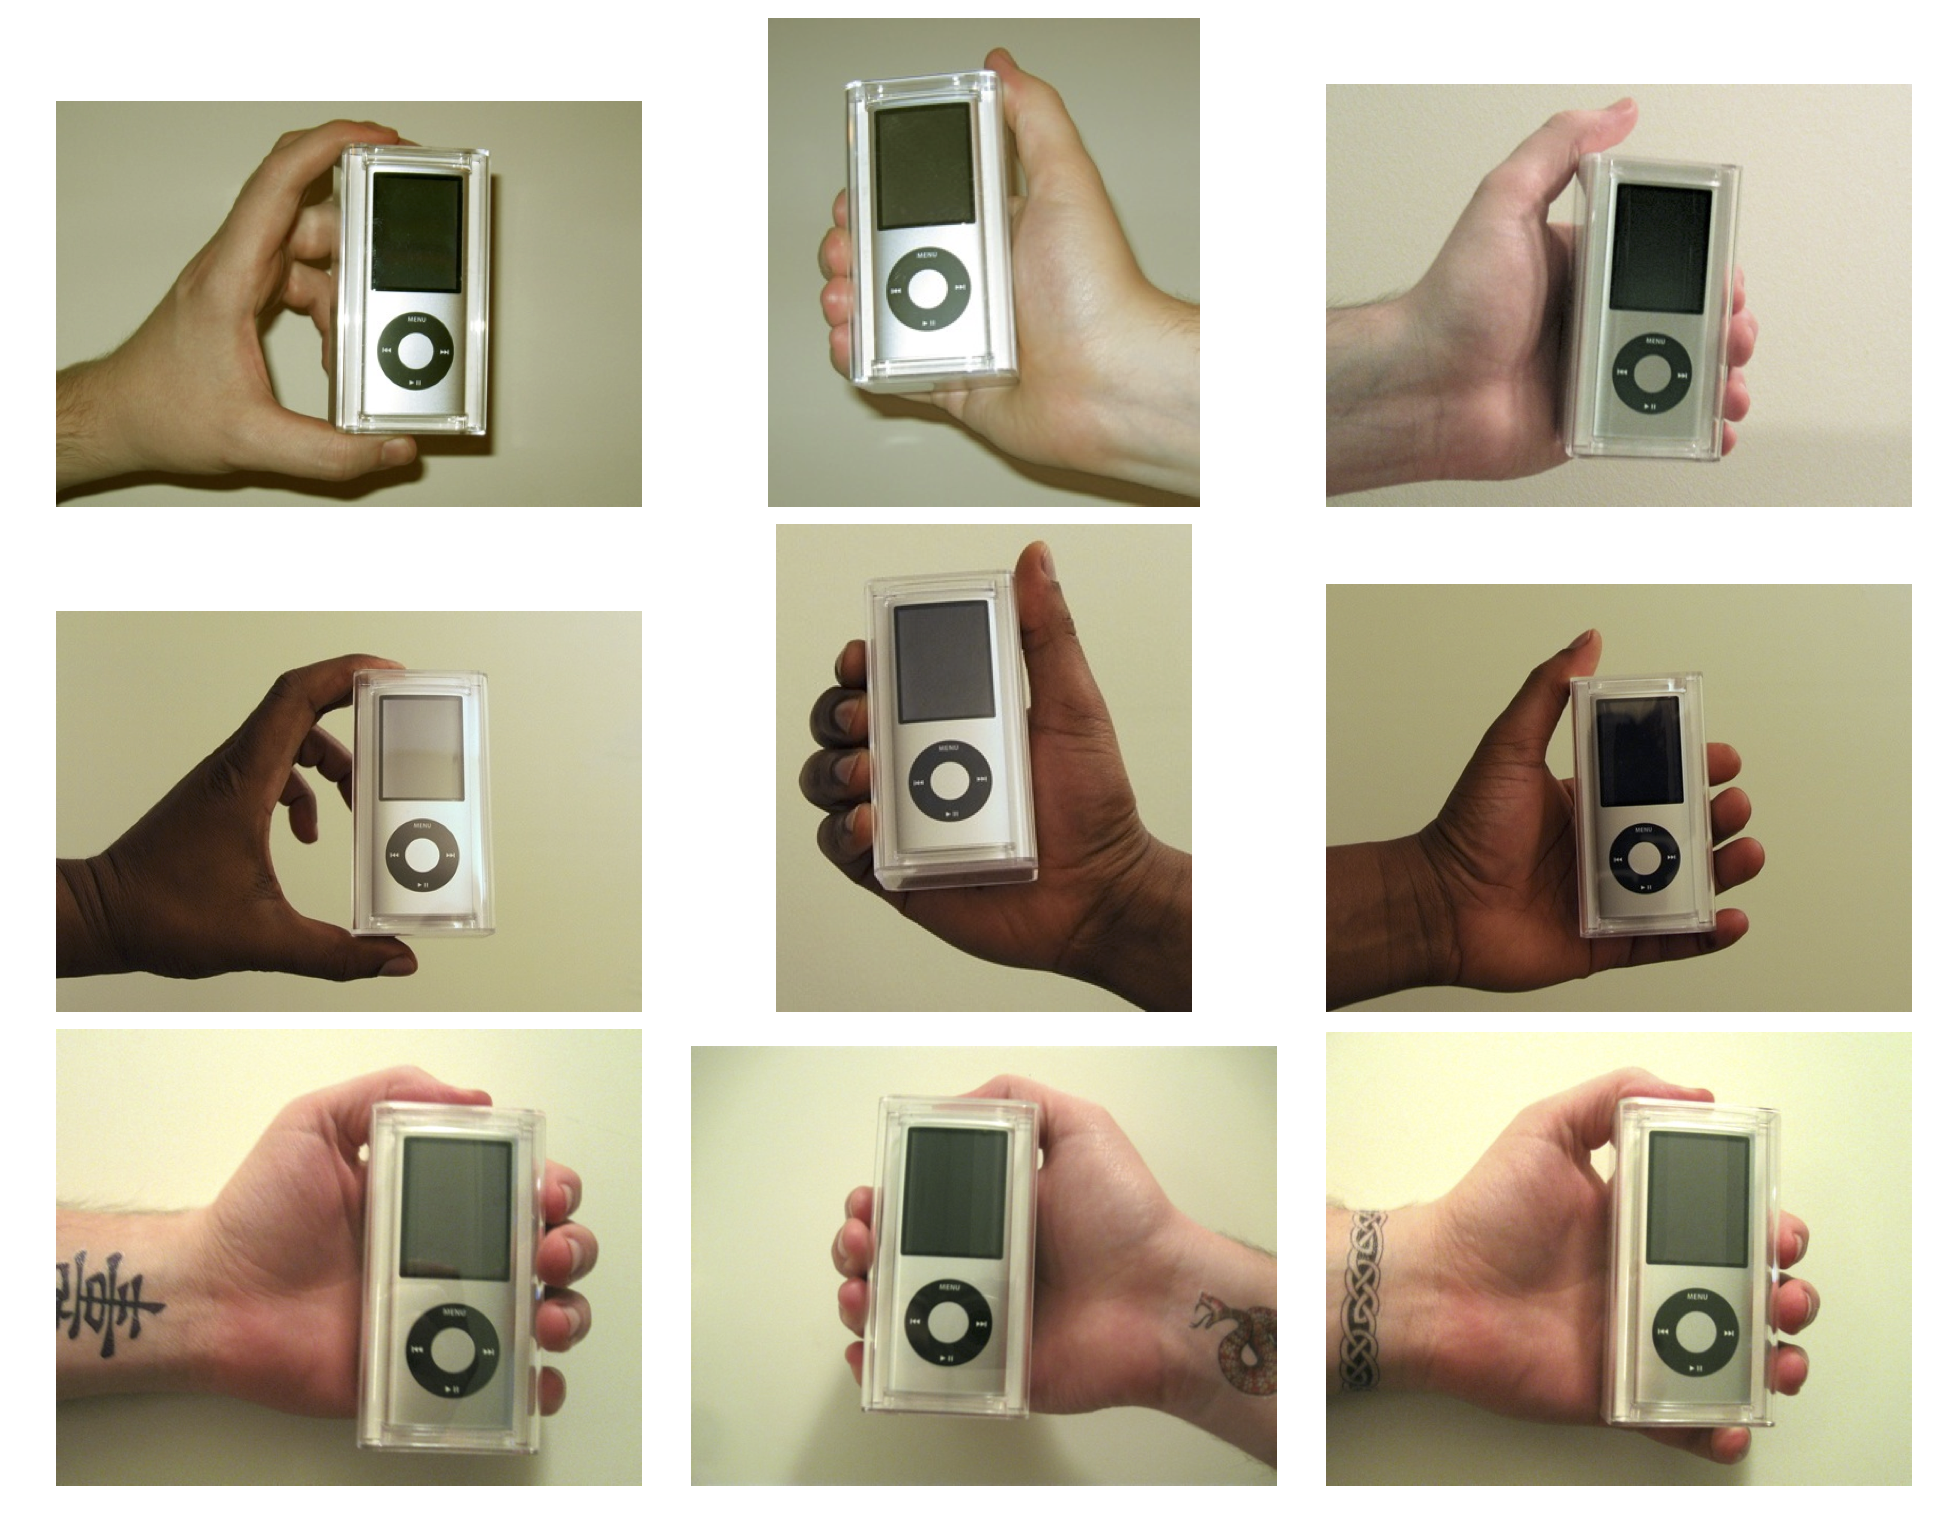 Слика 4.13: Раце употребени во експериментот Долеак и Штајн (2013). iPods беа продавани од продавачи со различни карактеристики за мерење на дискриминацијата во онлајн пазар. Репродуцирано со дозвола од Долец и Штајн (2013), слика 1.